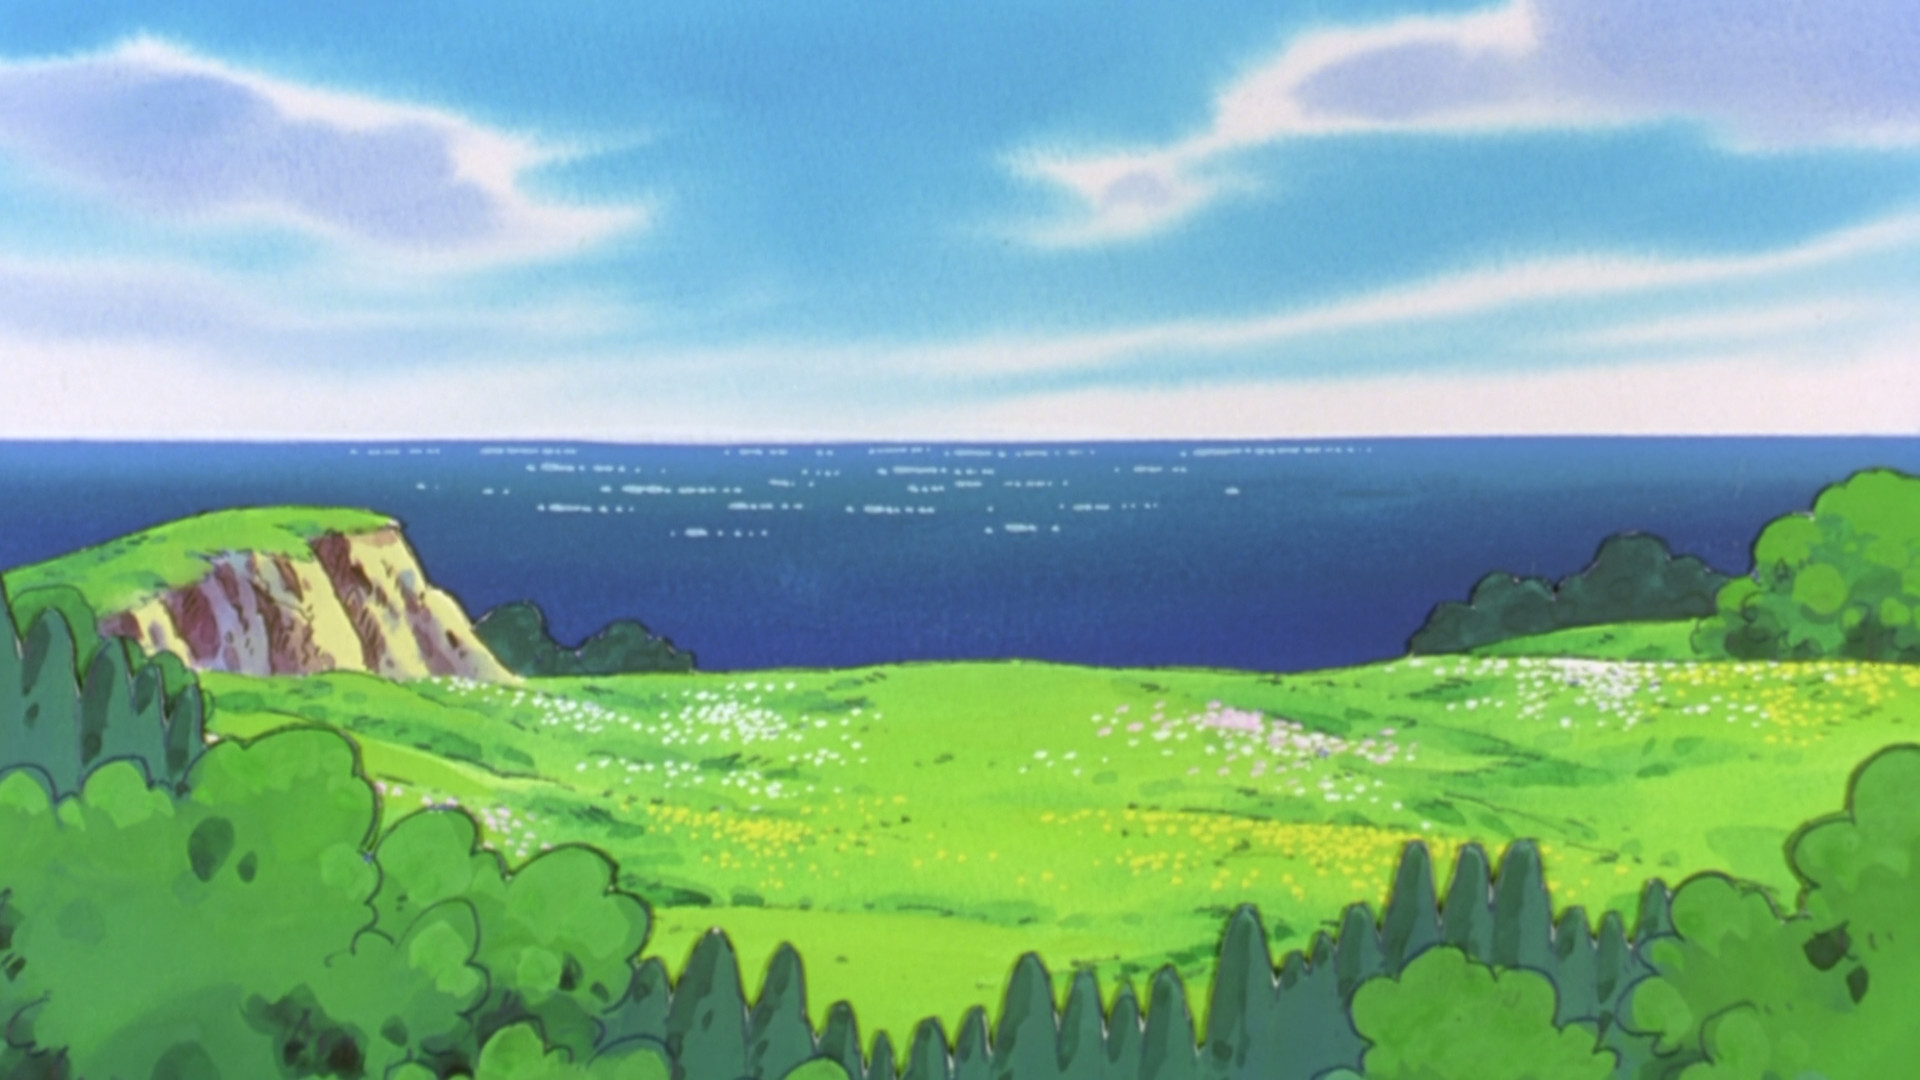 pokemon scenery 720p